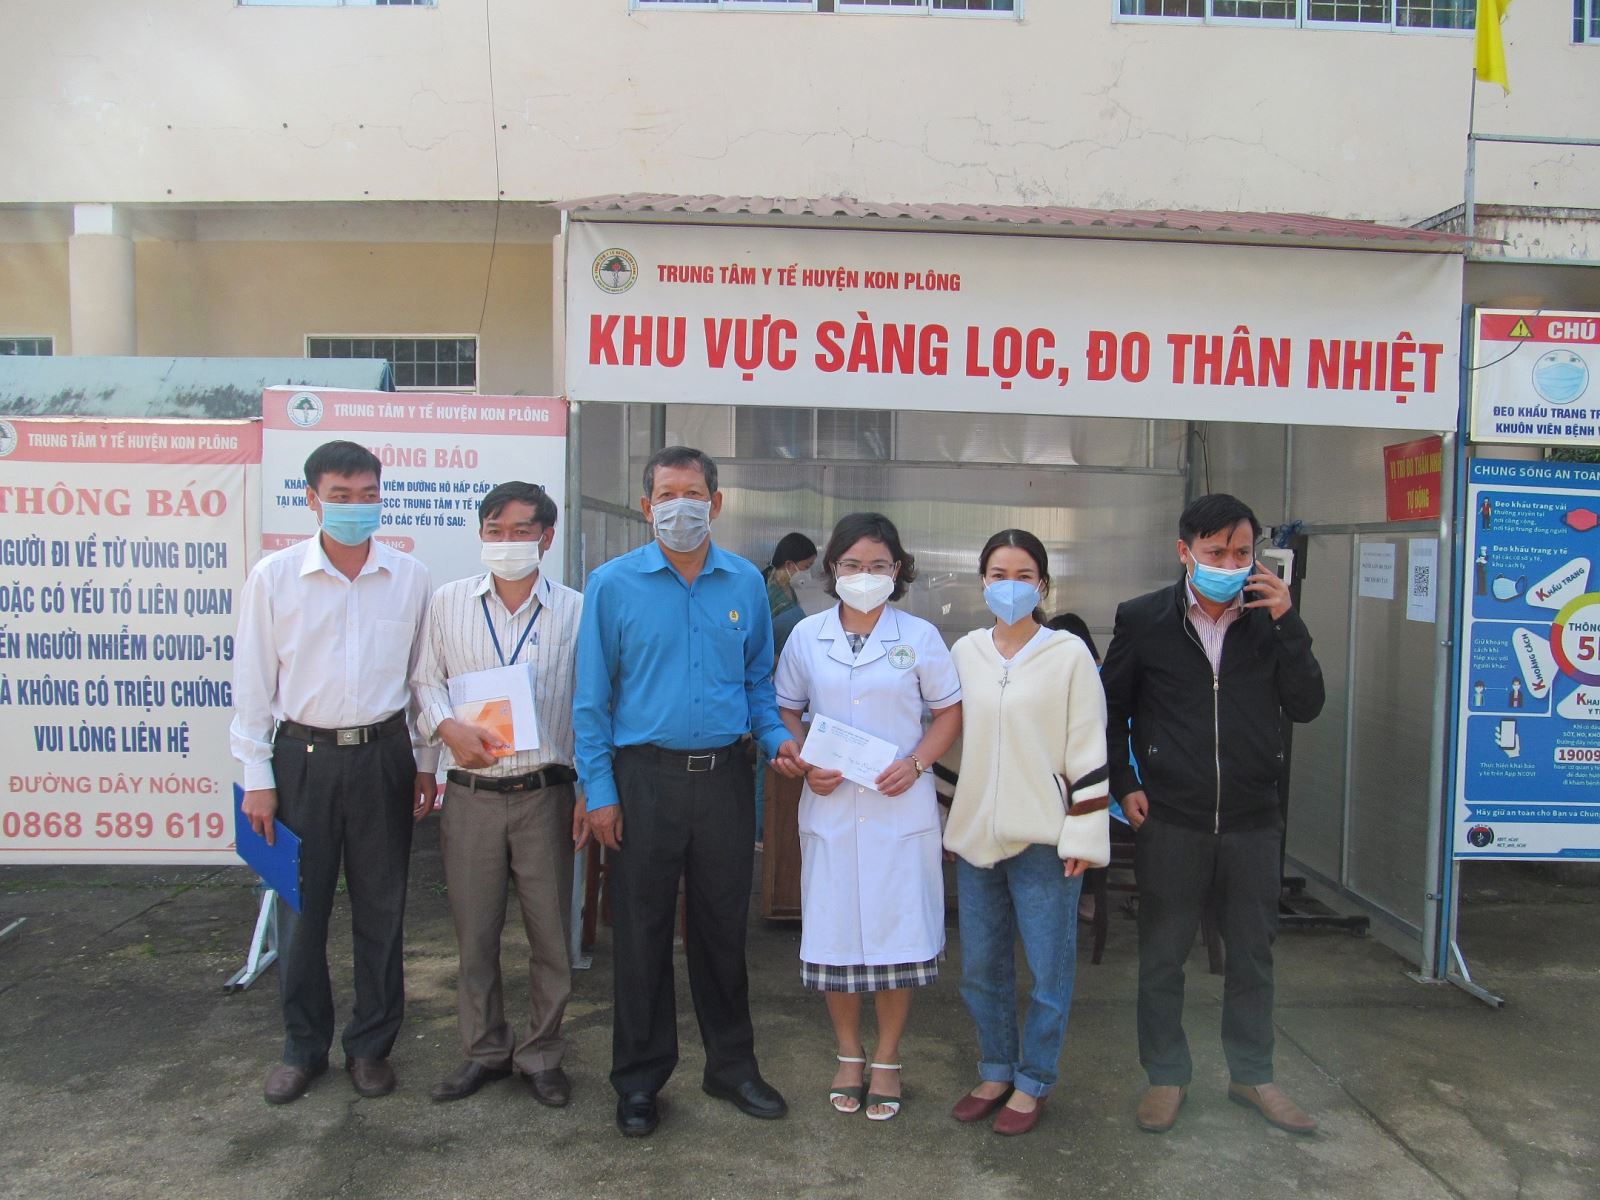 LĐLĐ tỉnh thăm, hỗ trợ kinh phí cho Trung tâm Y tế huyện Kon PLông, đơn vị tuyến đầu phòng, chống dịch Covid-19